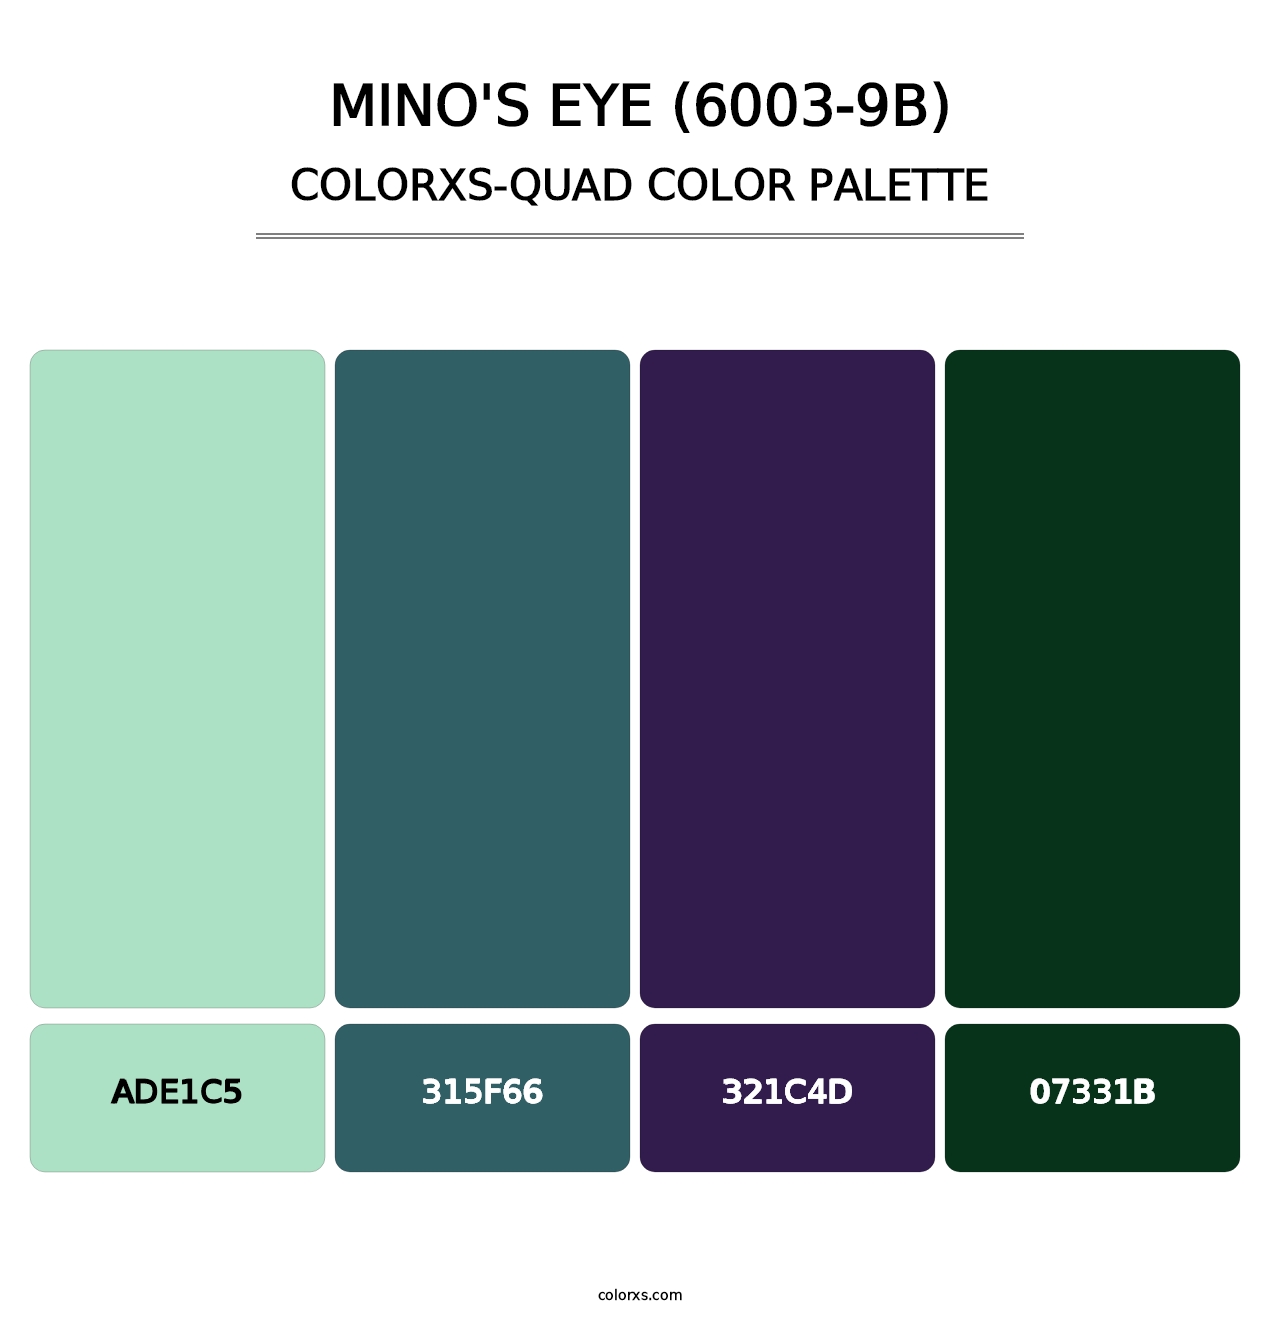 Mino's Eye (6003-9B) - Colorxs Quad Palette